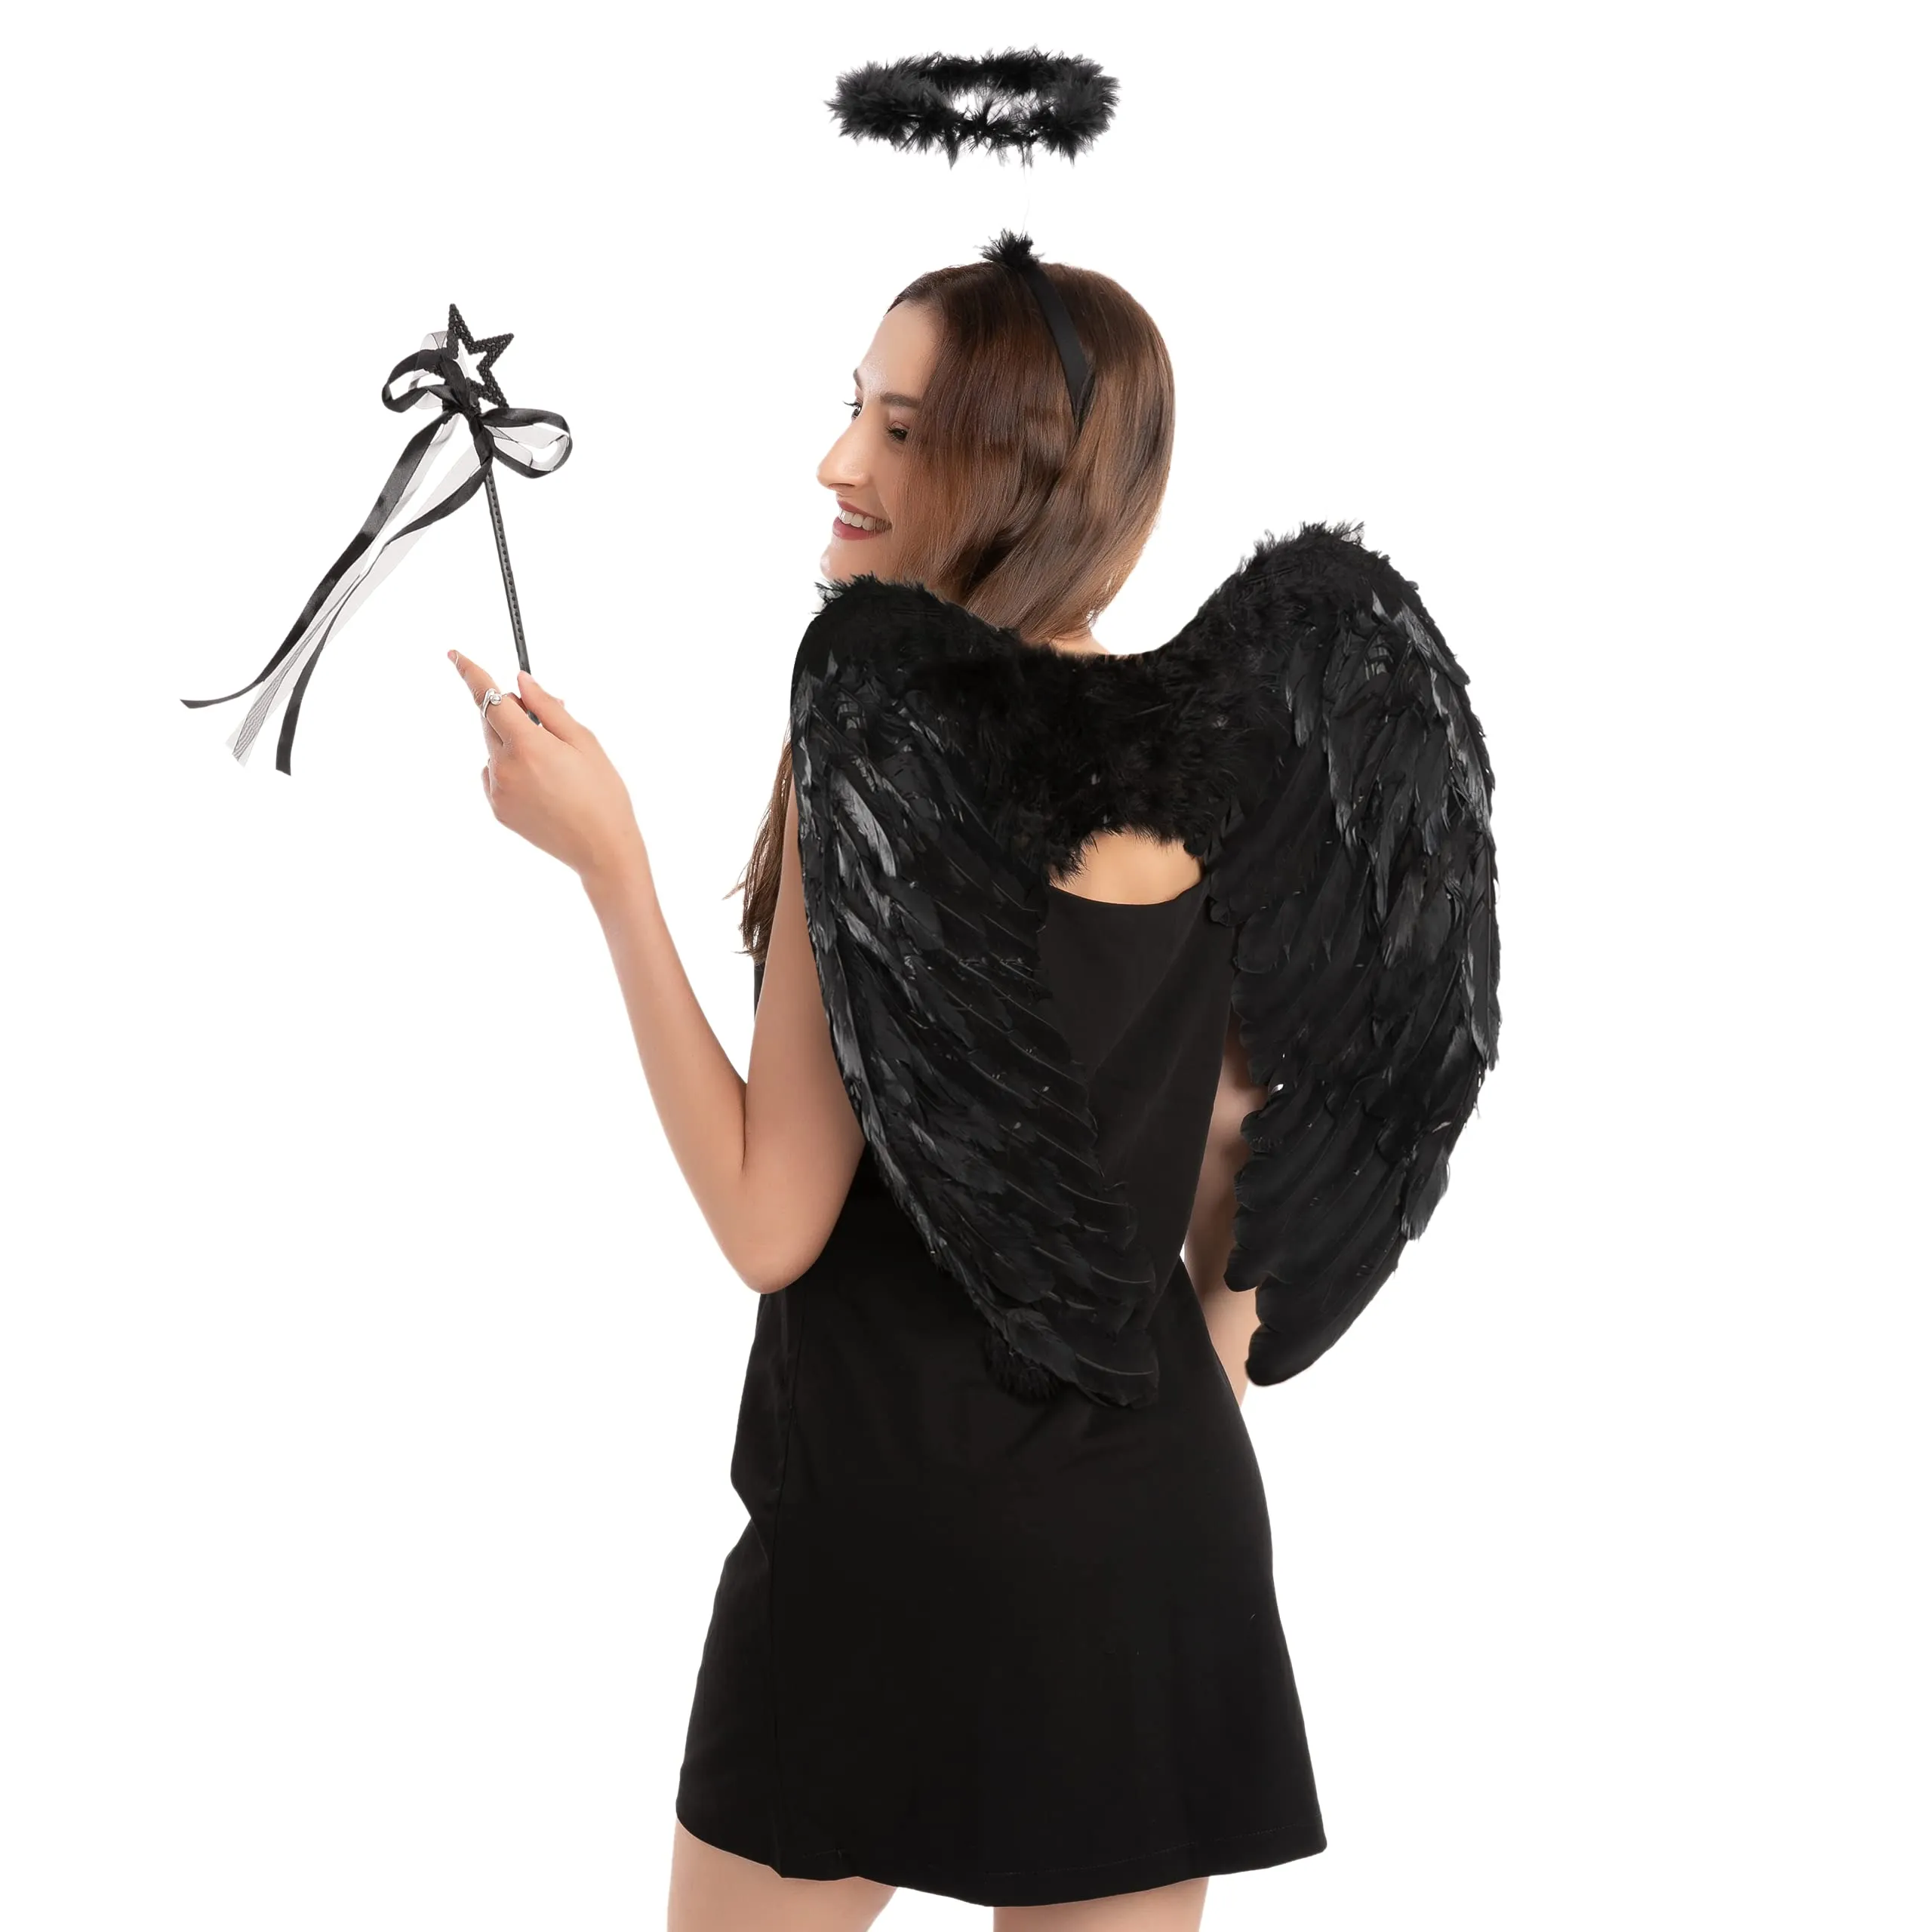 dark angel wings costume